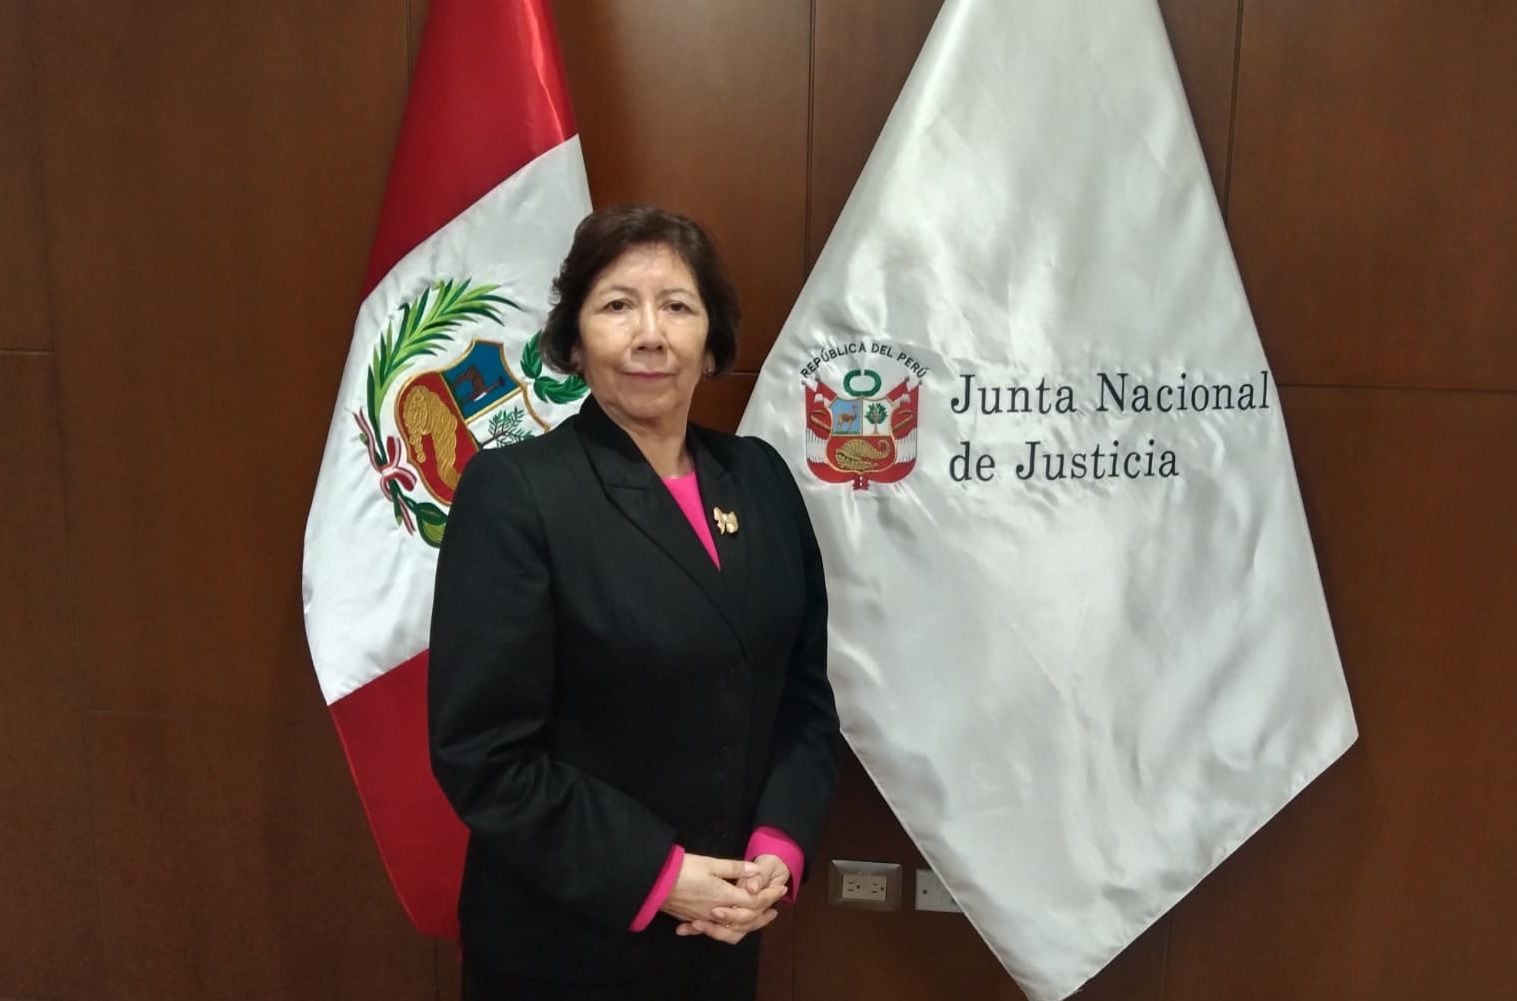 Imelda Tumialán, presidenta de la Junta Nacional de Justicia, habló con Infobae Perú sobre el proceso sumario que se le inició en el Congreso. Foto: Rodrigo Chillitupa.